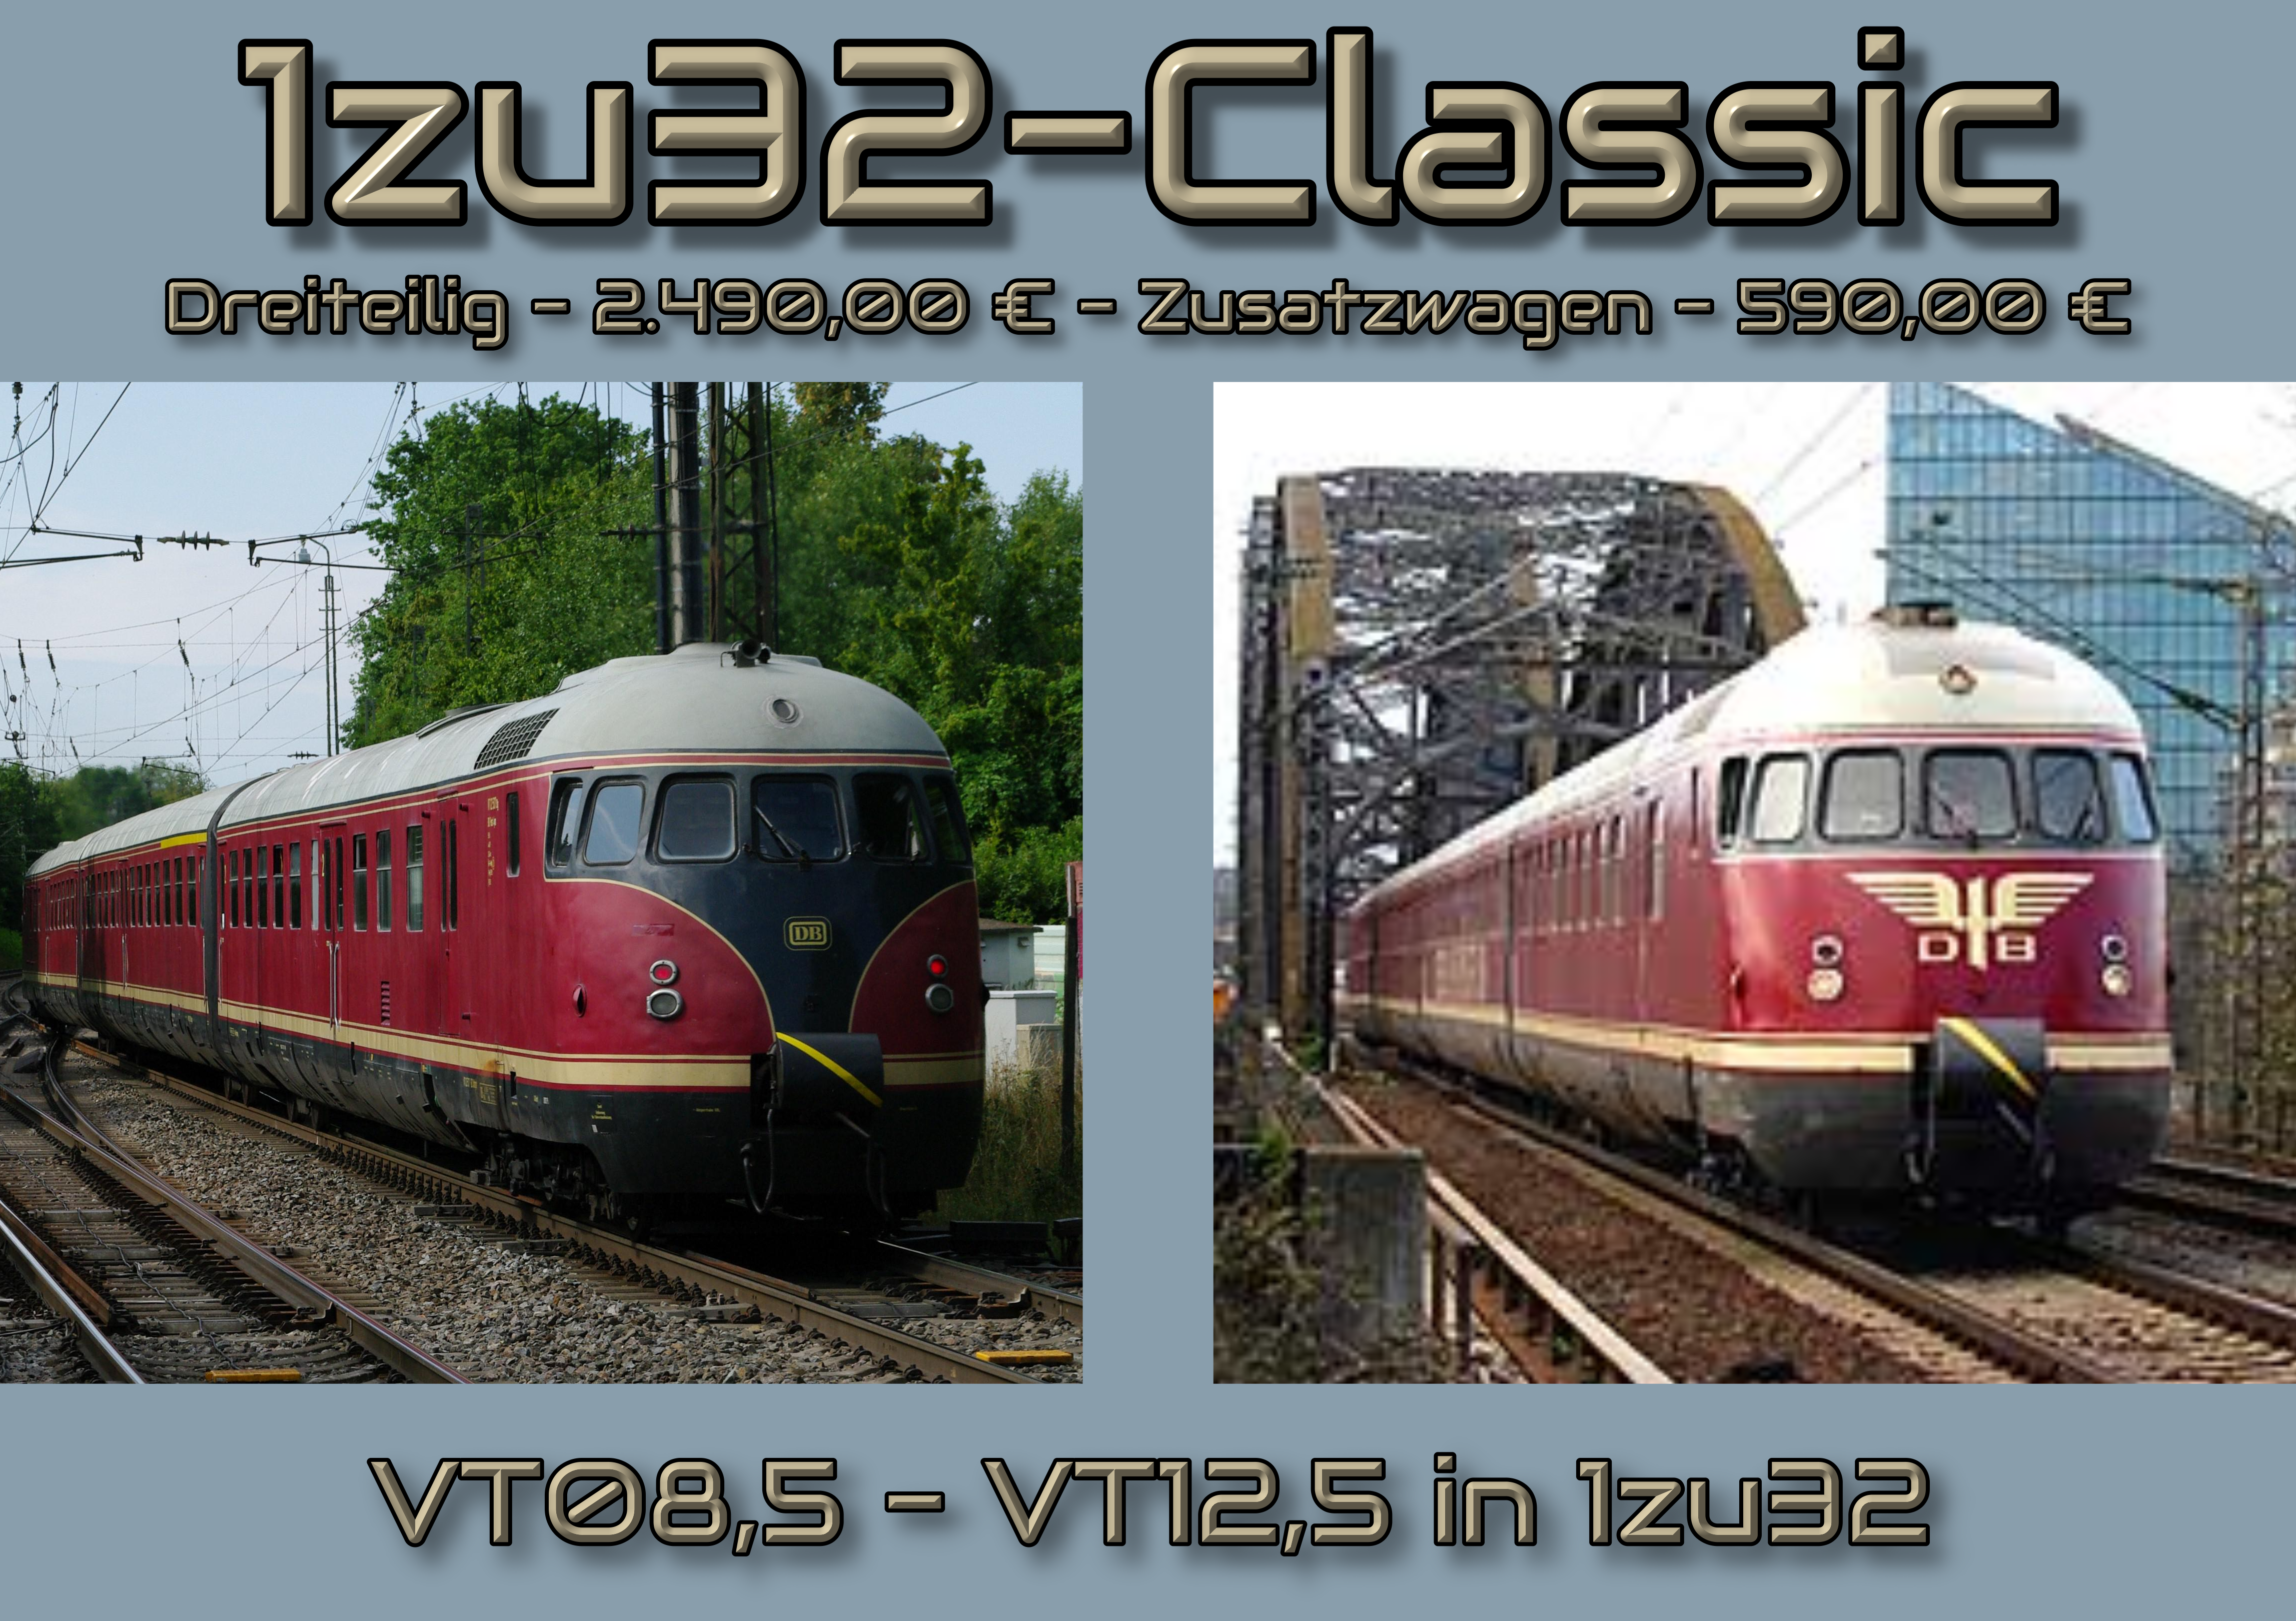 VT08,5_in_1zu32-Classic